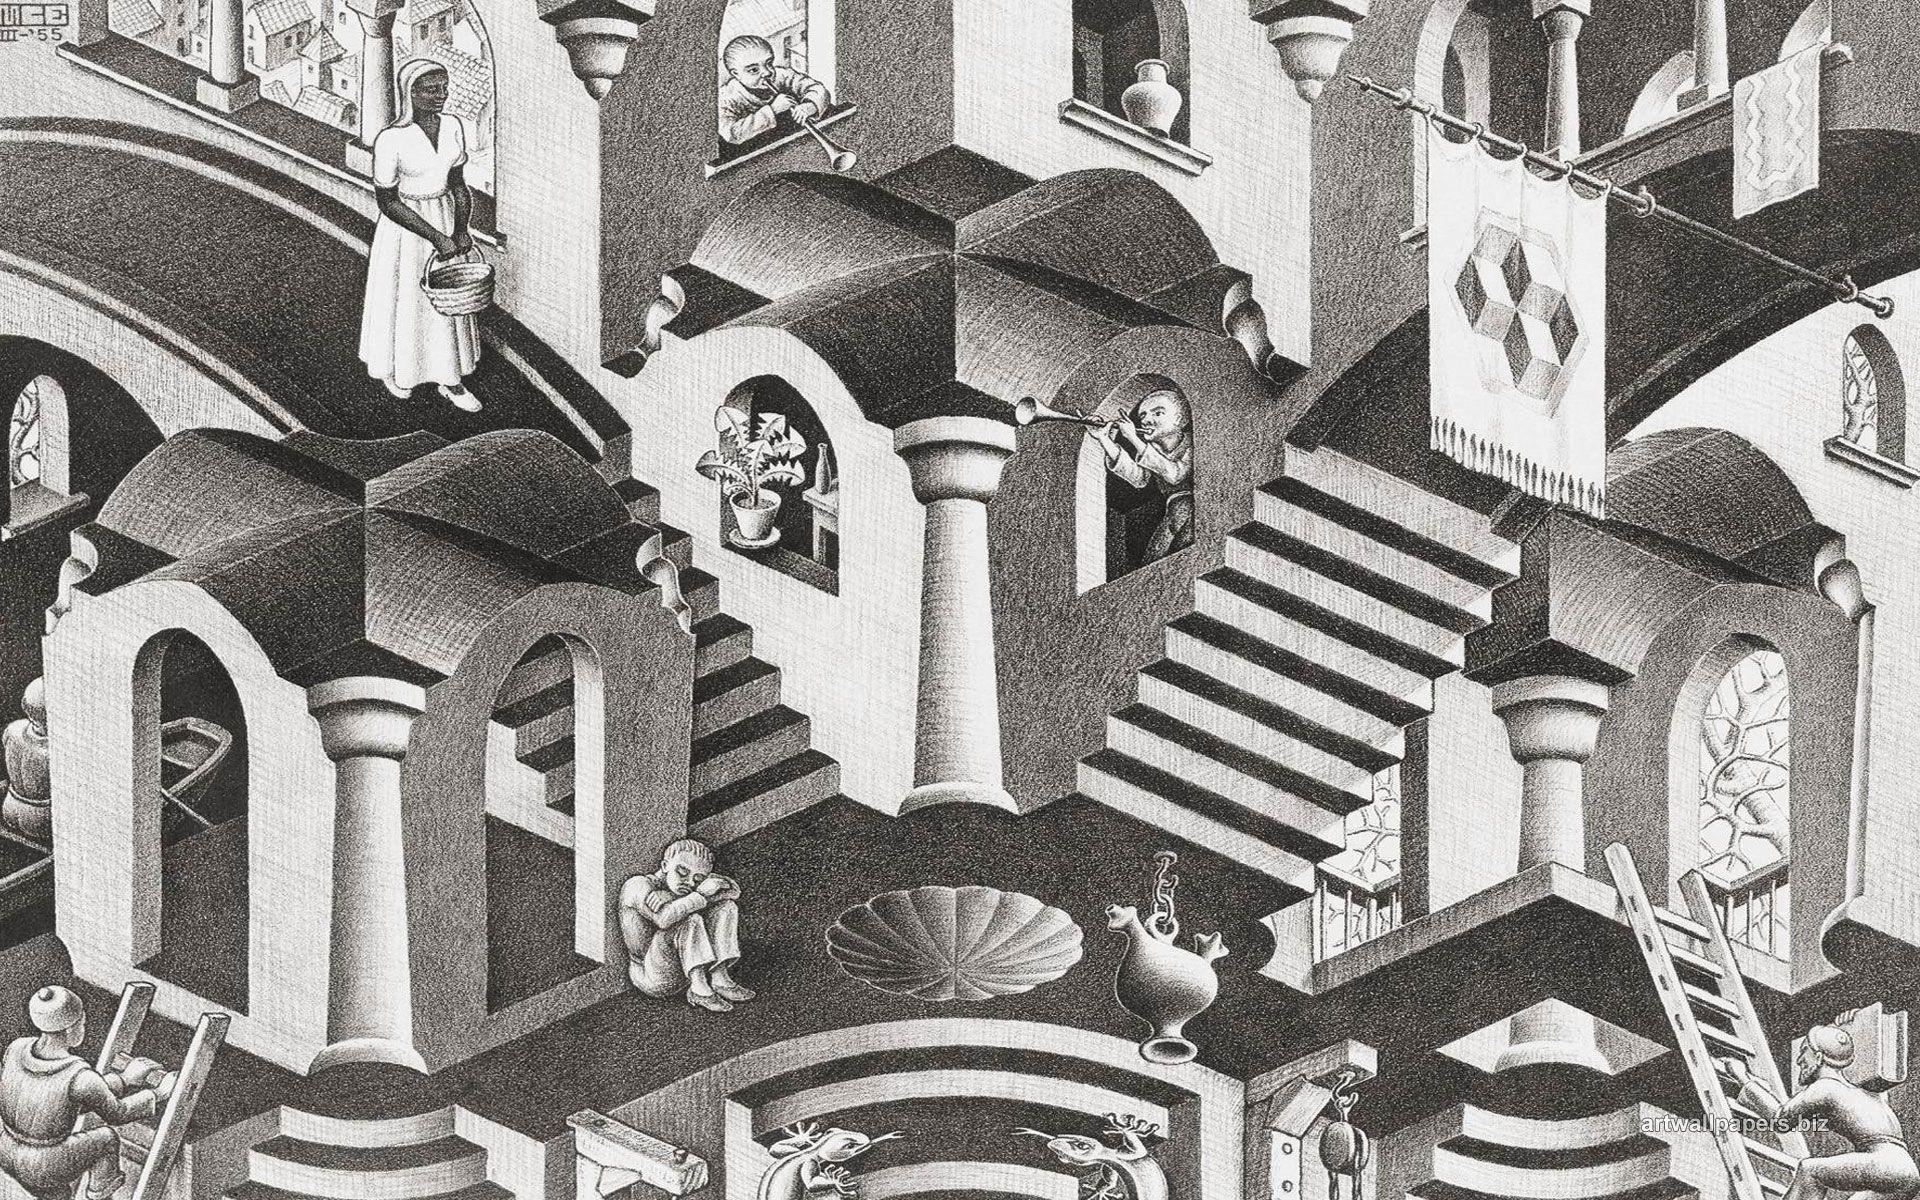 M C Escher Wallpaper